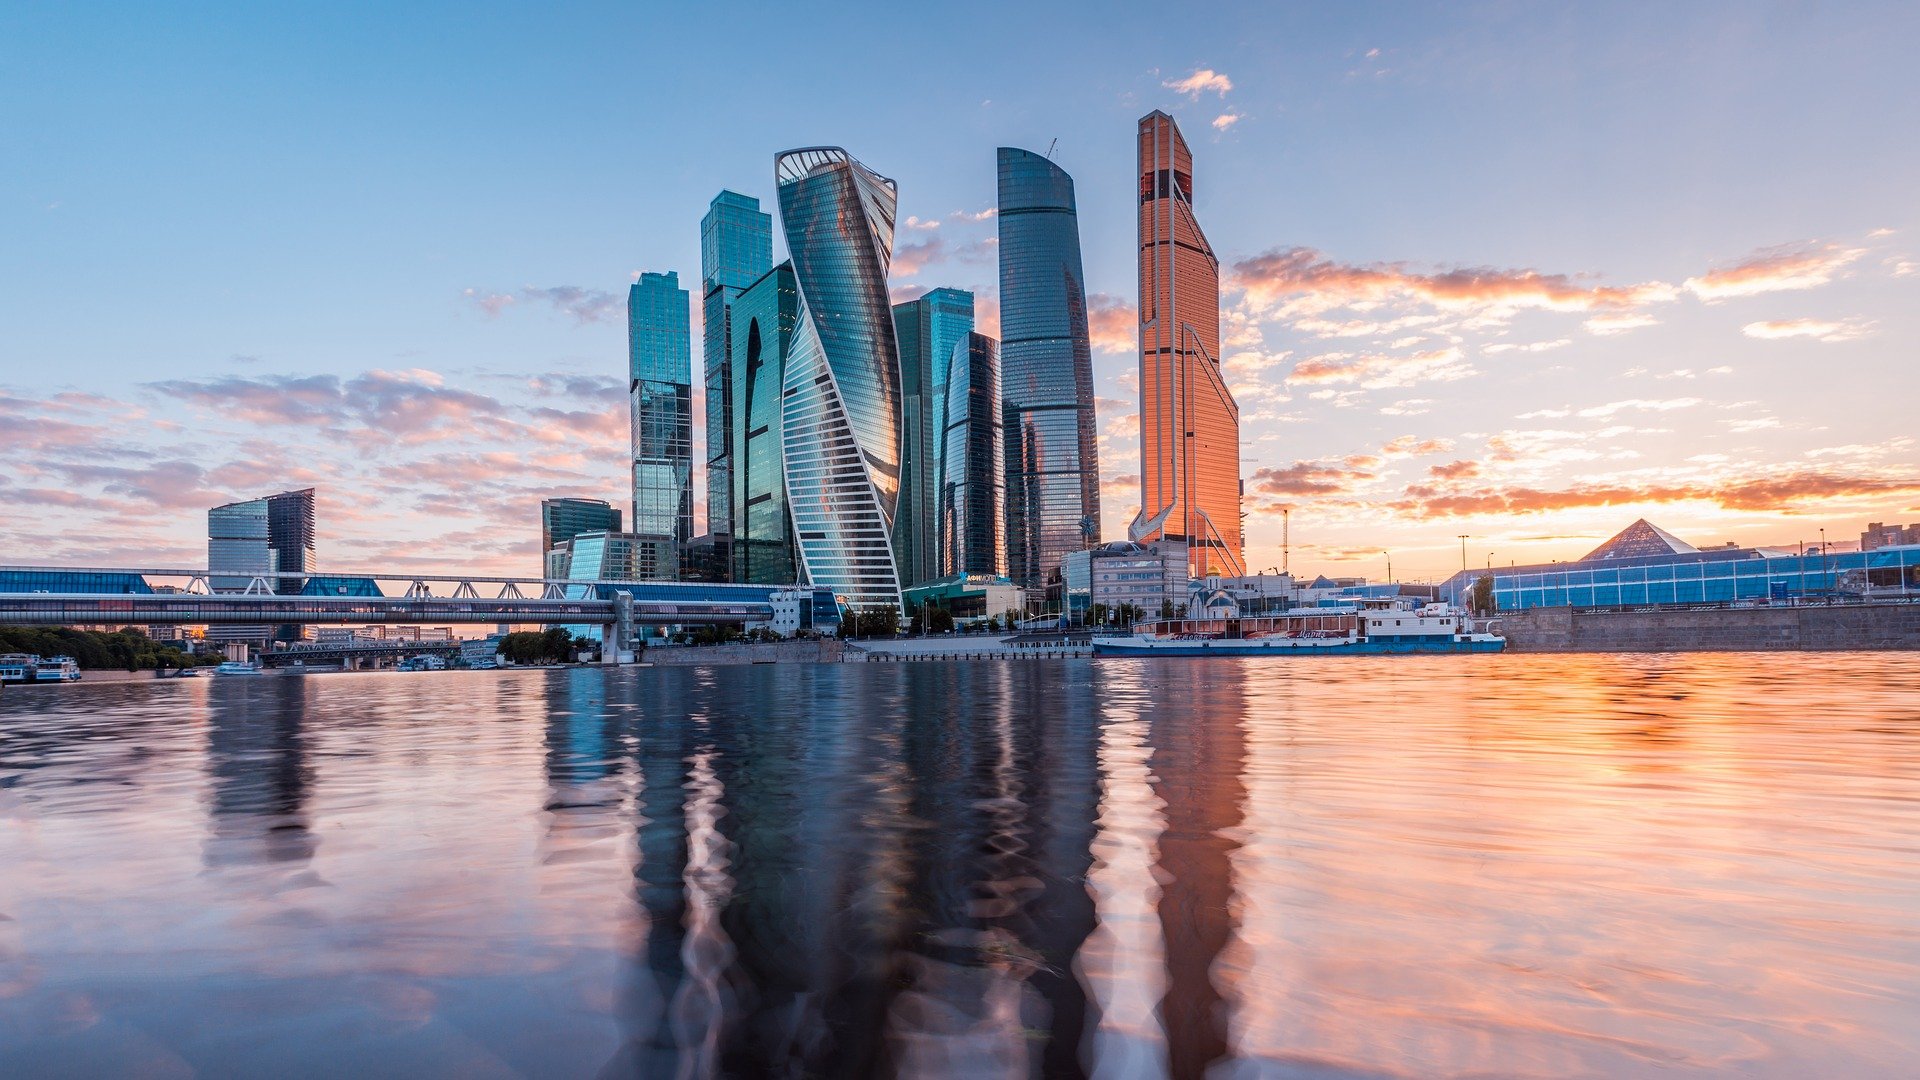 Москва опять заняла четвертое место в рейтинге лучших городов мира по версии компании Resonance